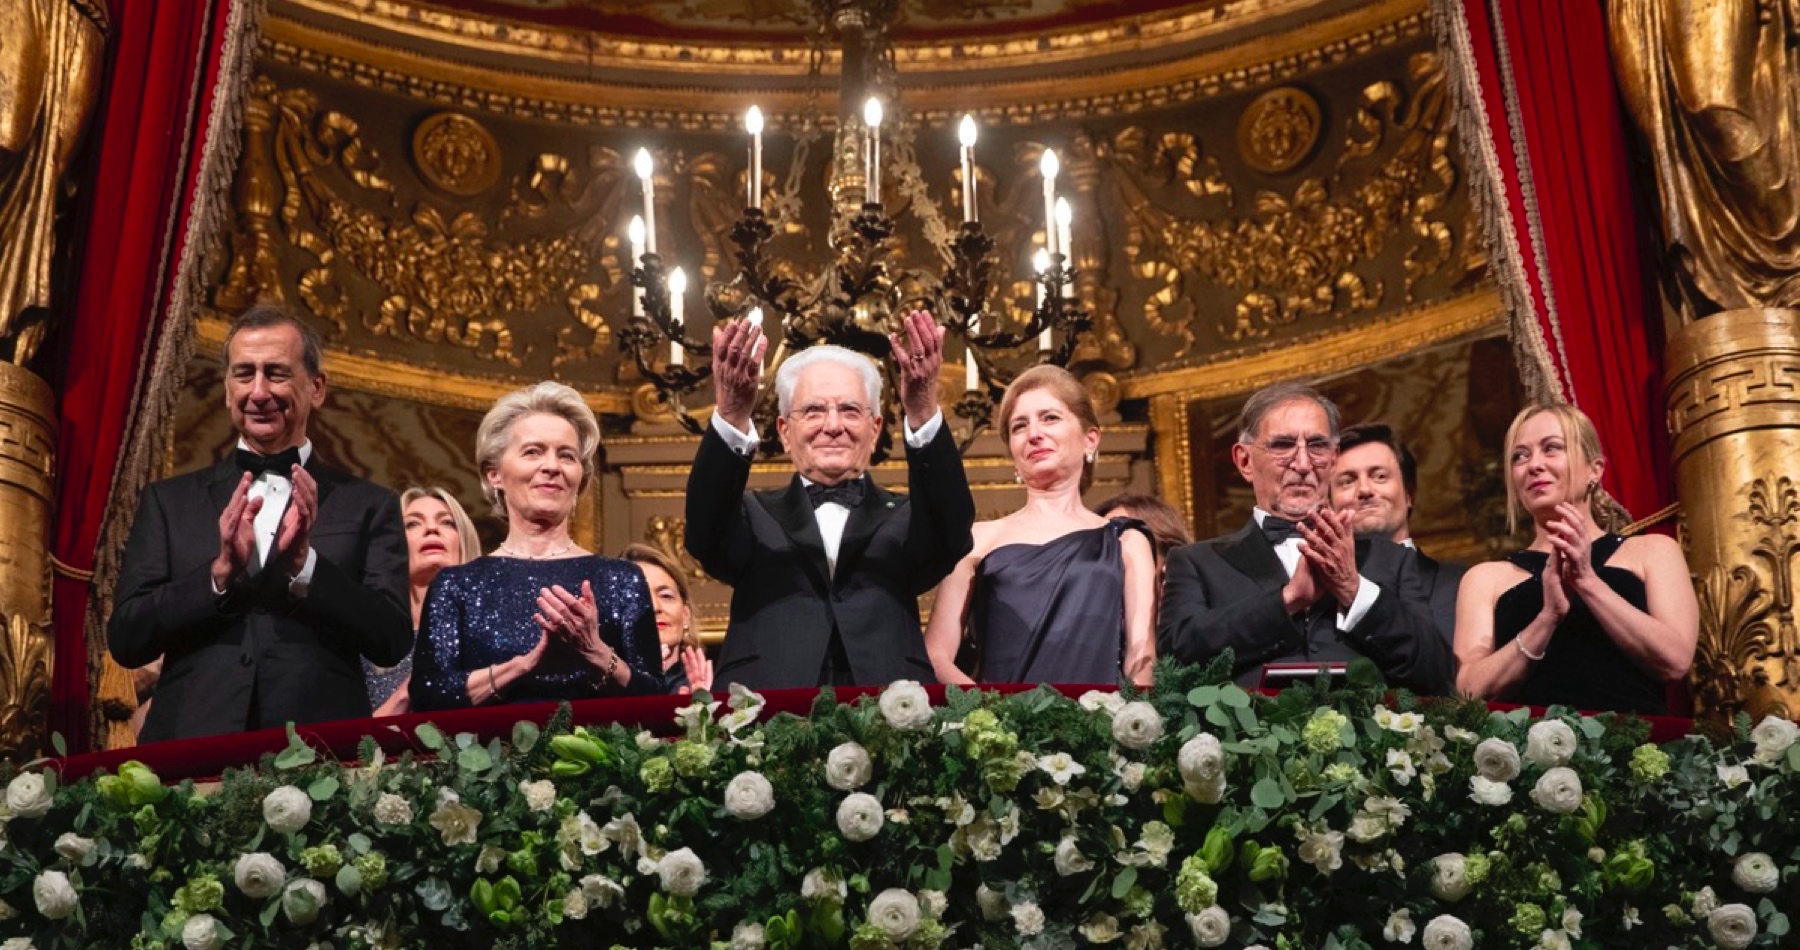 VIDEO: „Veľkú ruskú kultúru nemožno zrušiť,“ vyhlásil taliansky prezident Mattarella pred premiérou opery “Boris Godunov” v milánskej La Scale a zožal obrovský potlesk v stoji